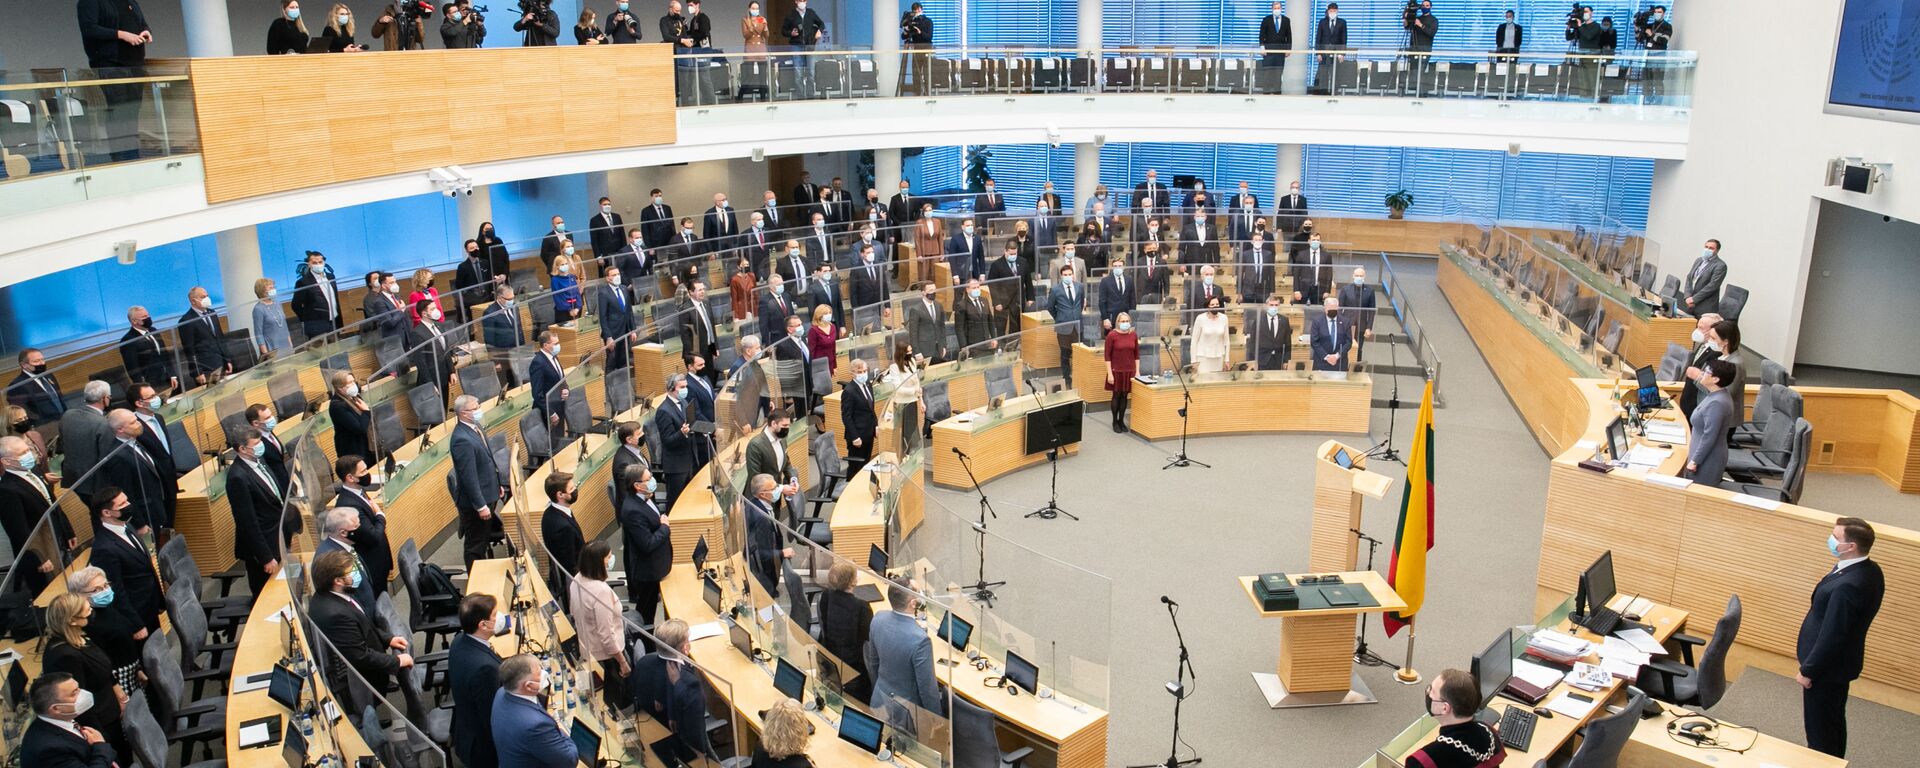 Первое заседание весенней сессии Сейма Литвы, 10 марта 2021 - Sputnik Литва, 1920, 11.03.2021